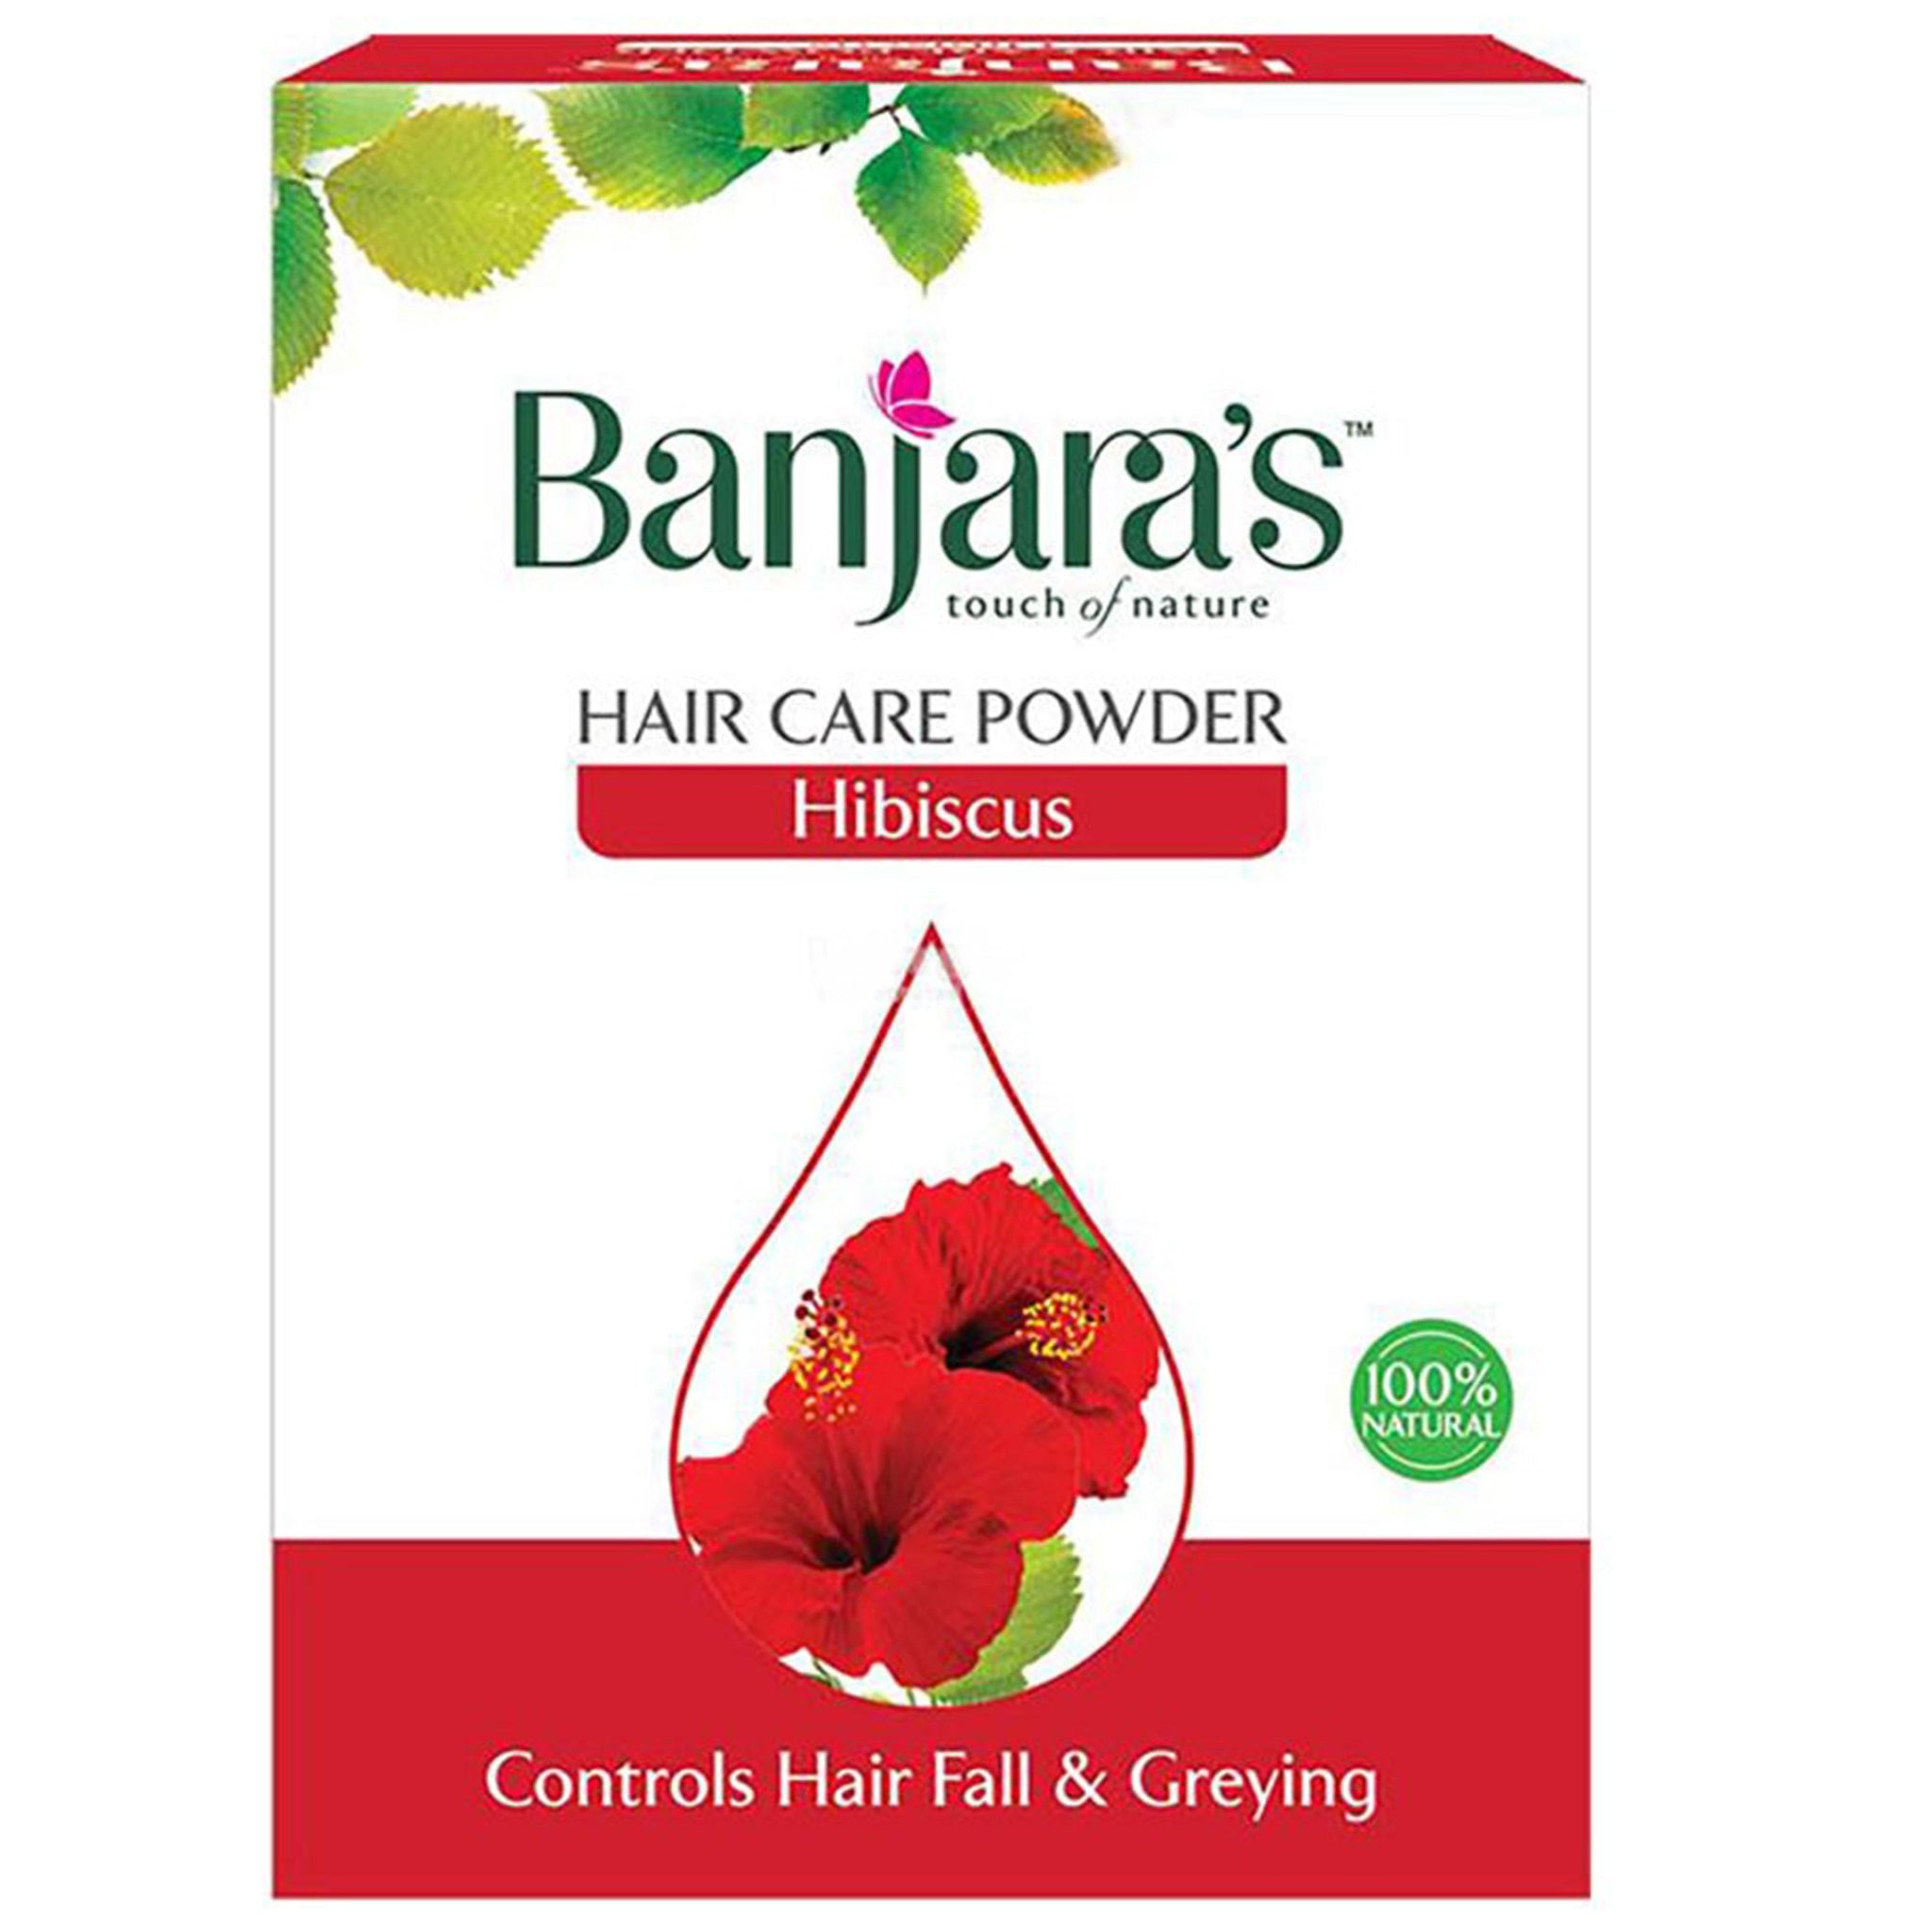 Banjaras Hibiscus Hair Care Powder 100g